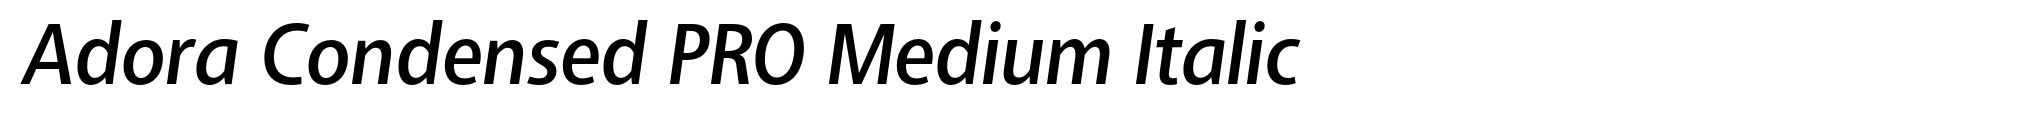 Adora Condensed PRO Medium Italic image